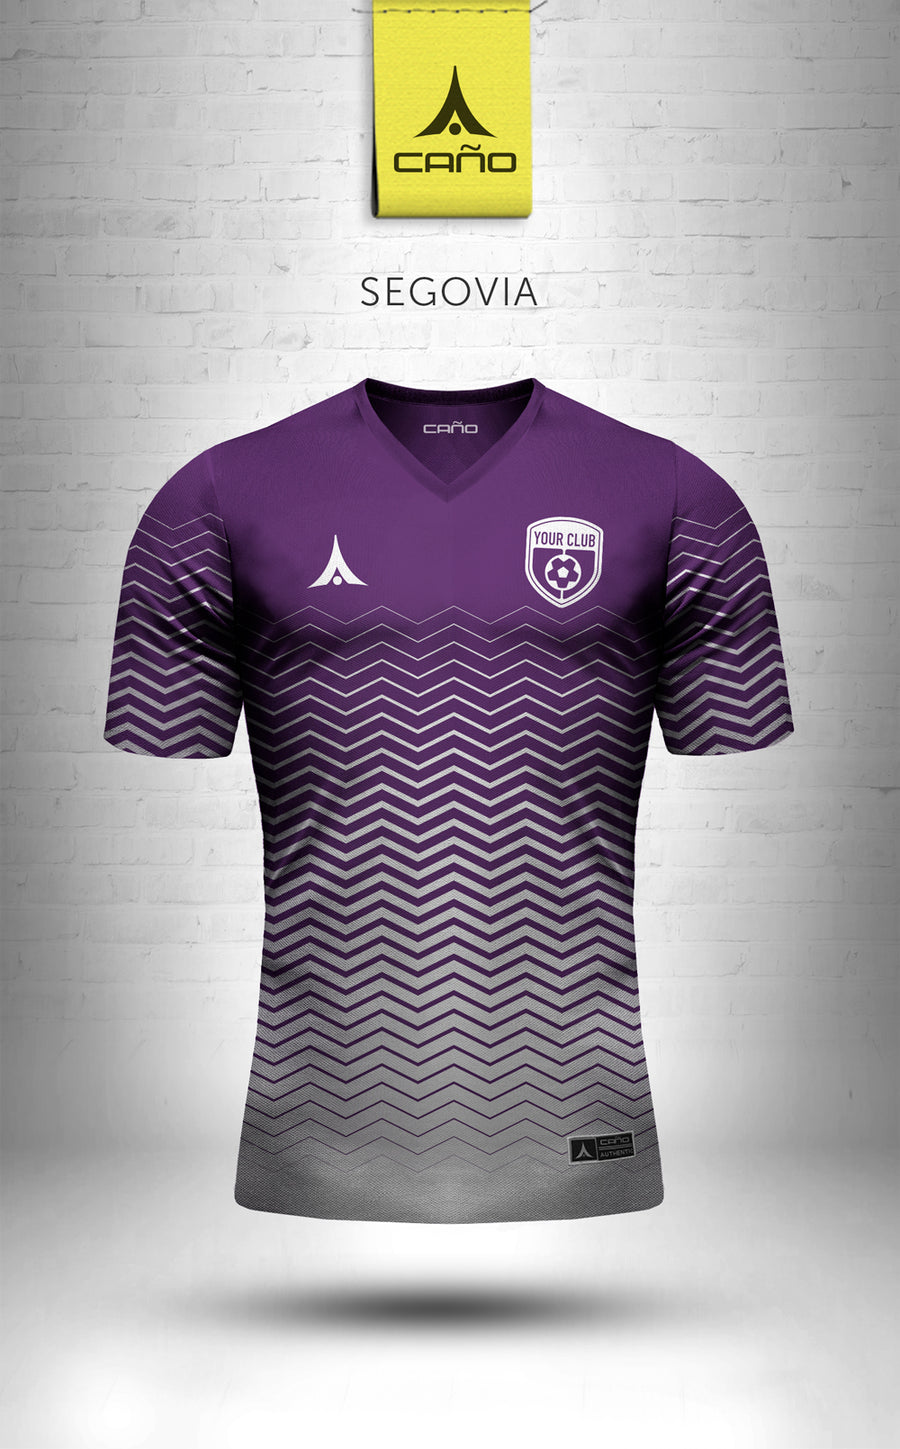 Segovia in purple/white